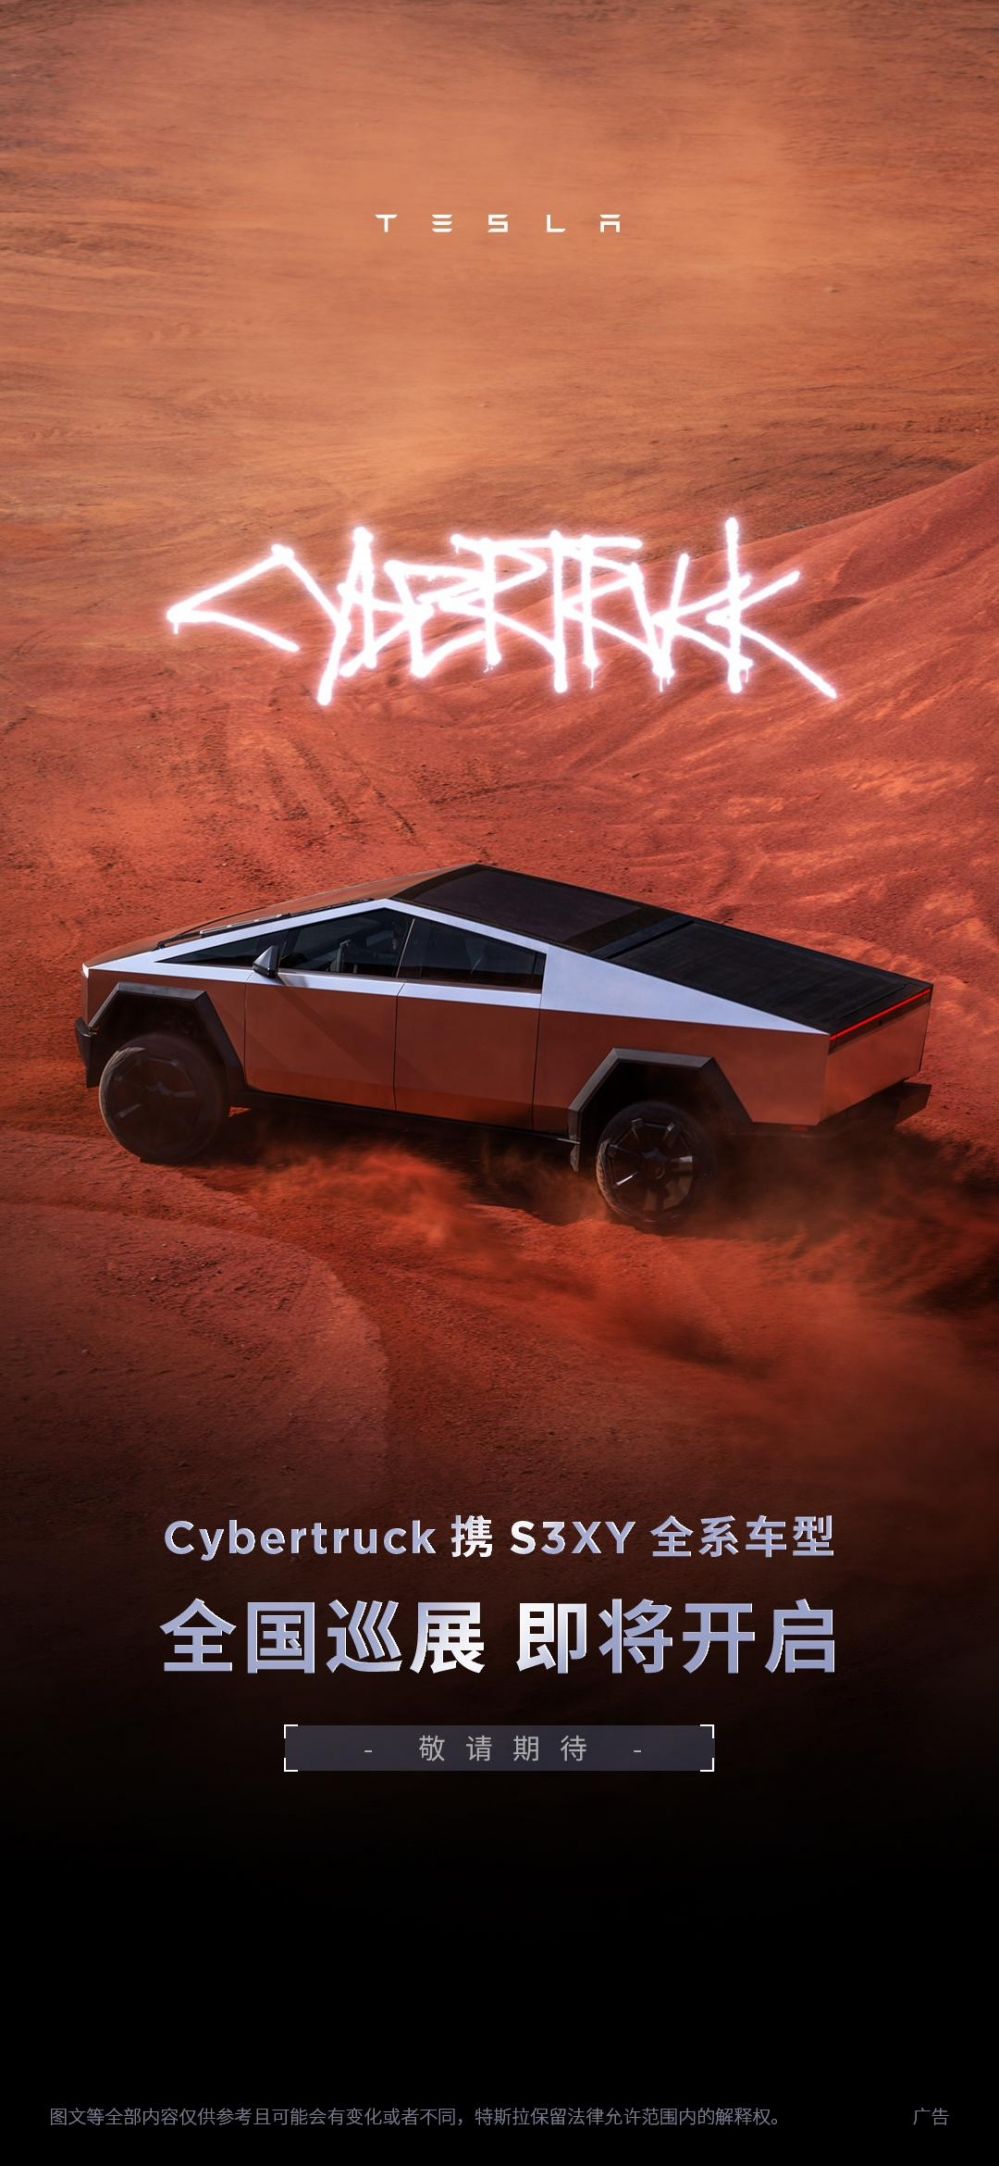 特斯拉Cybertruck将开启全国巡展